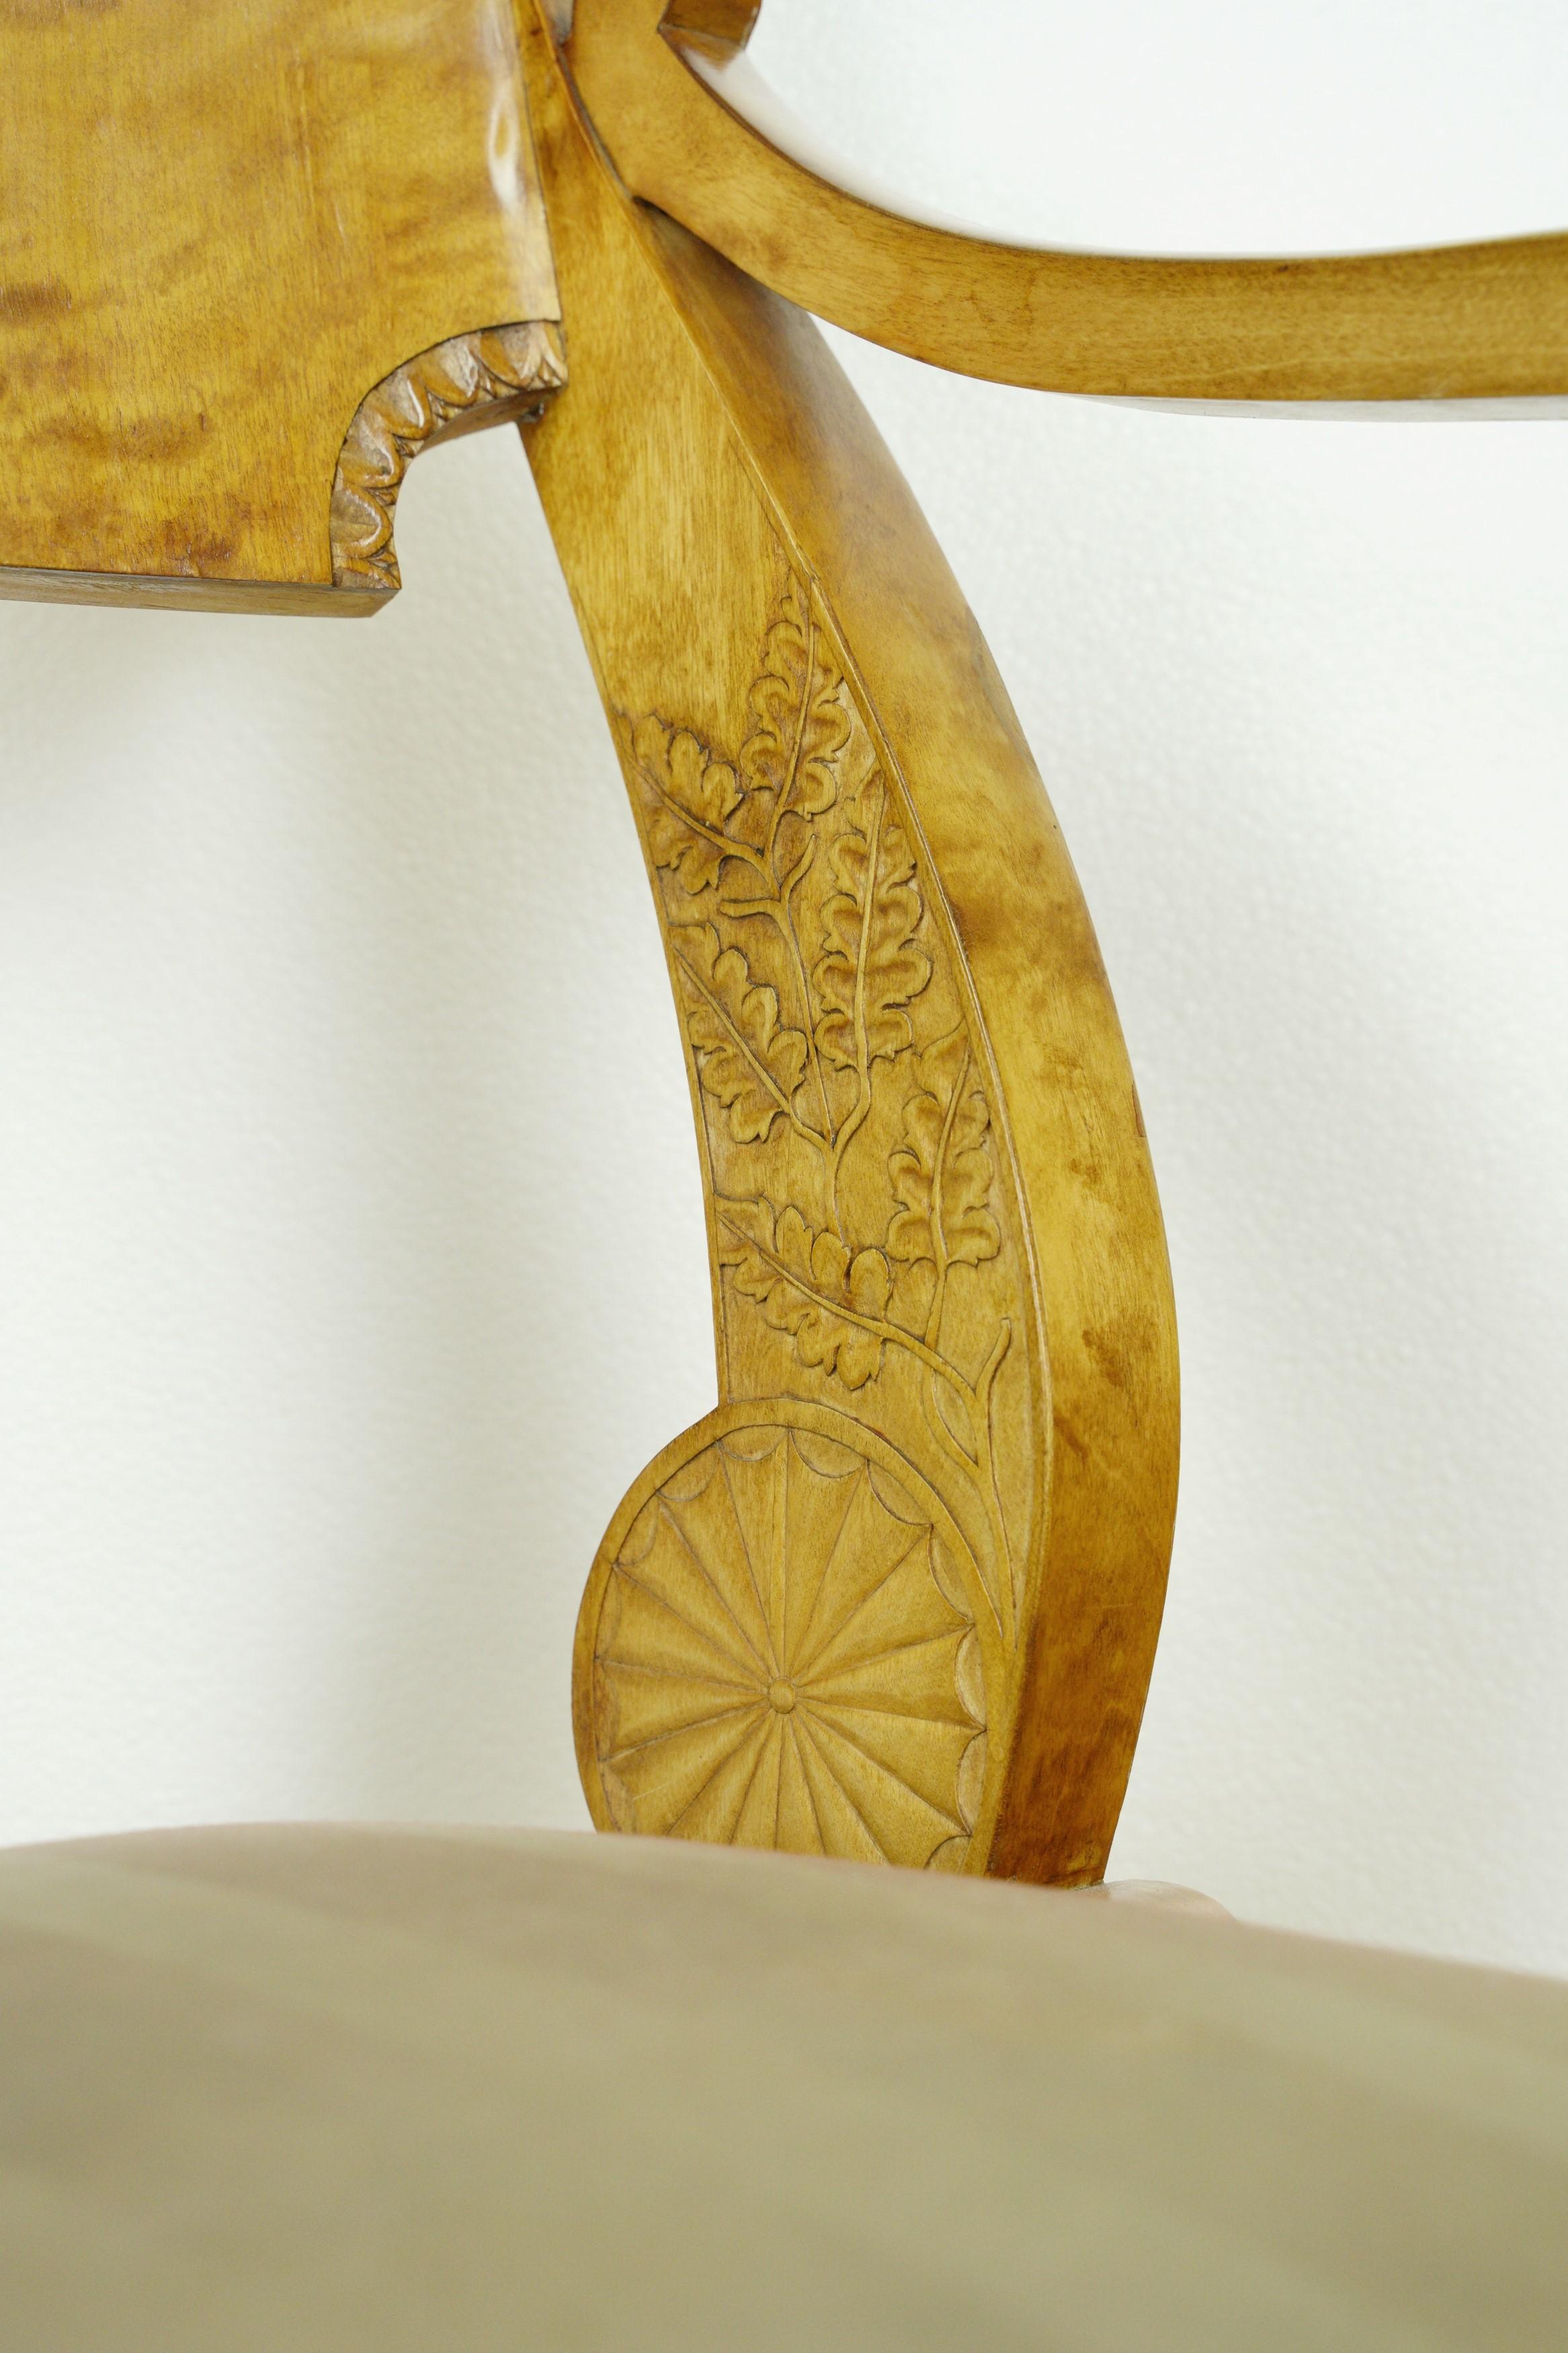 Antique Biedermeier Period Maple Chairs & Tea Table Set For Sale 3